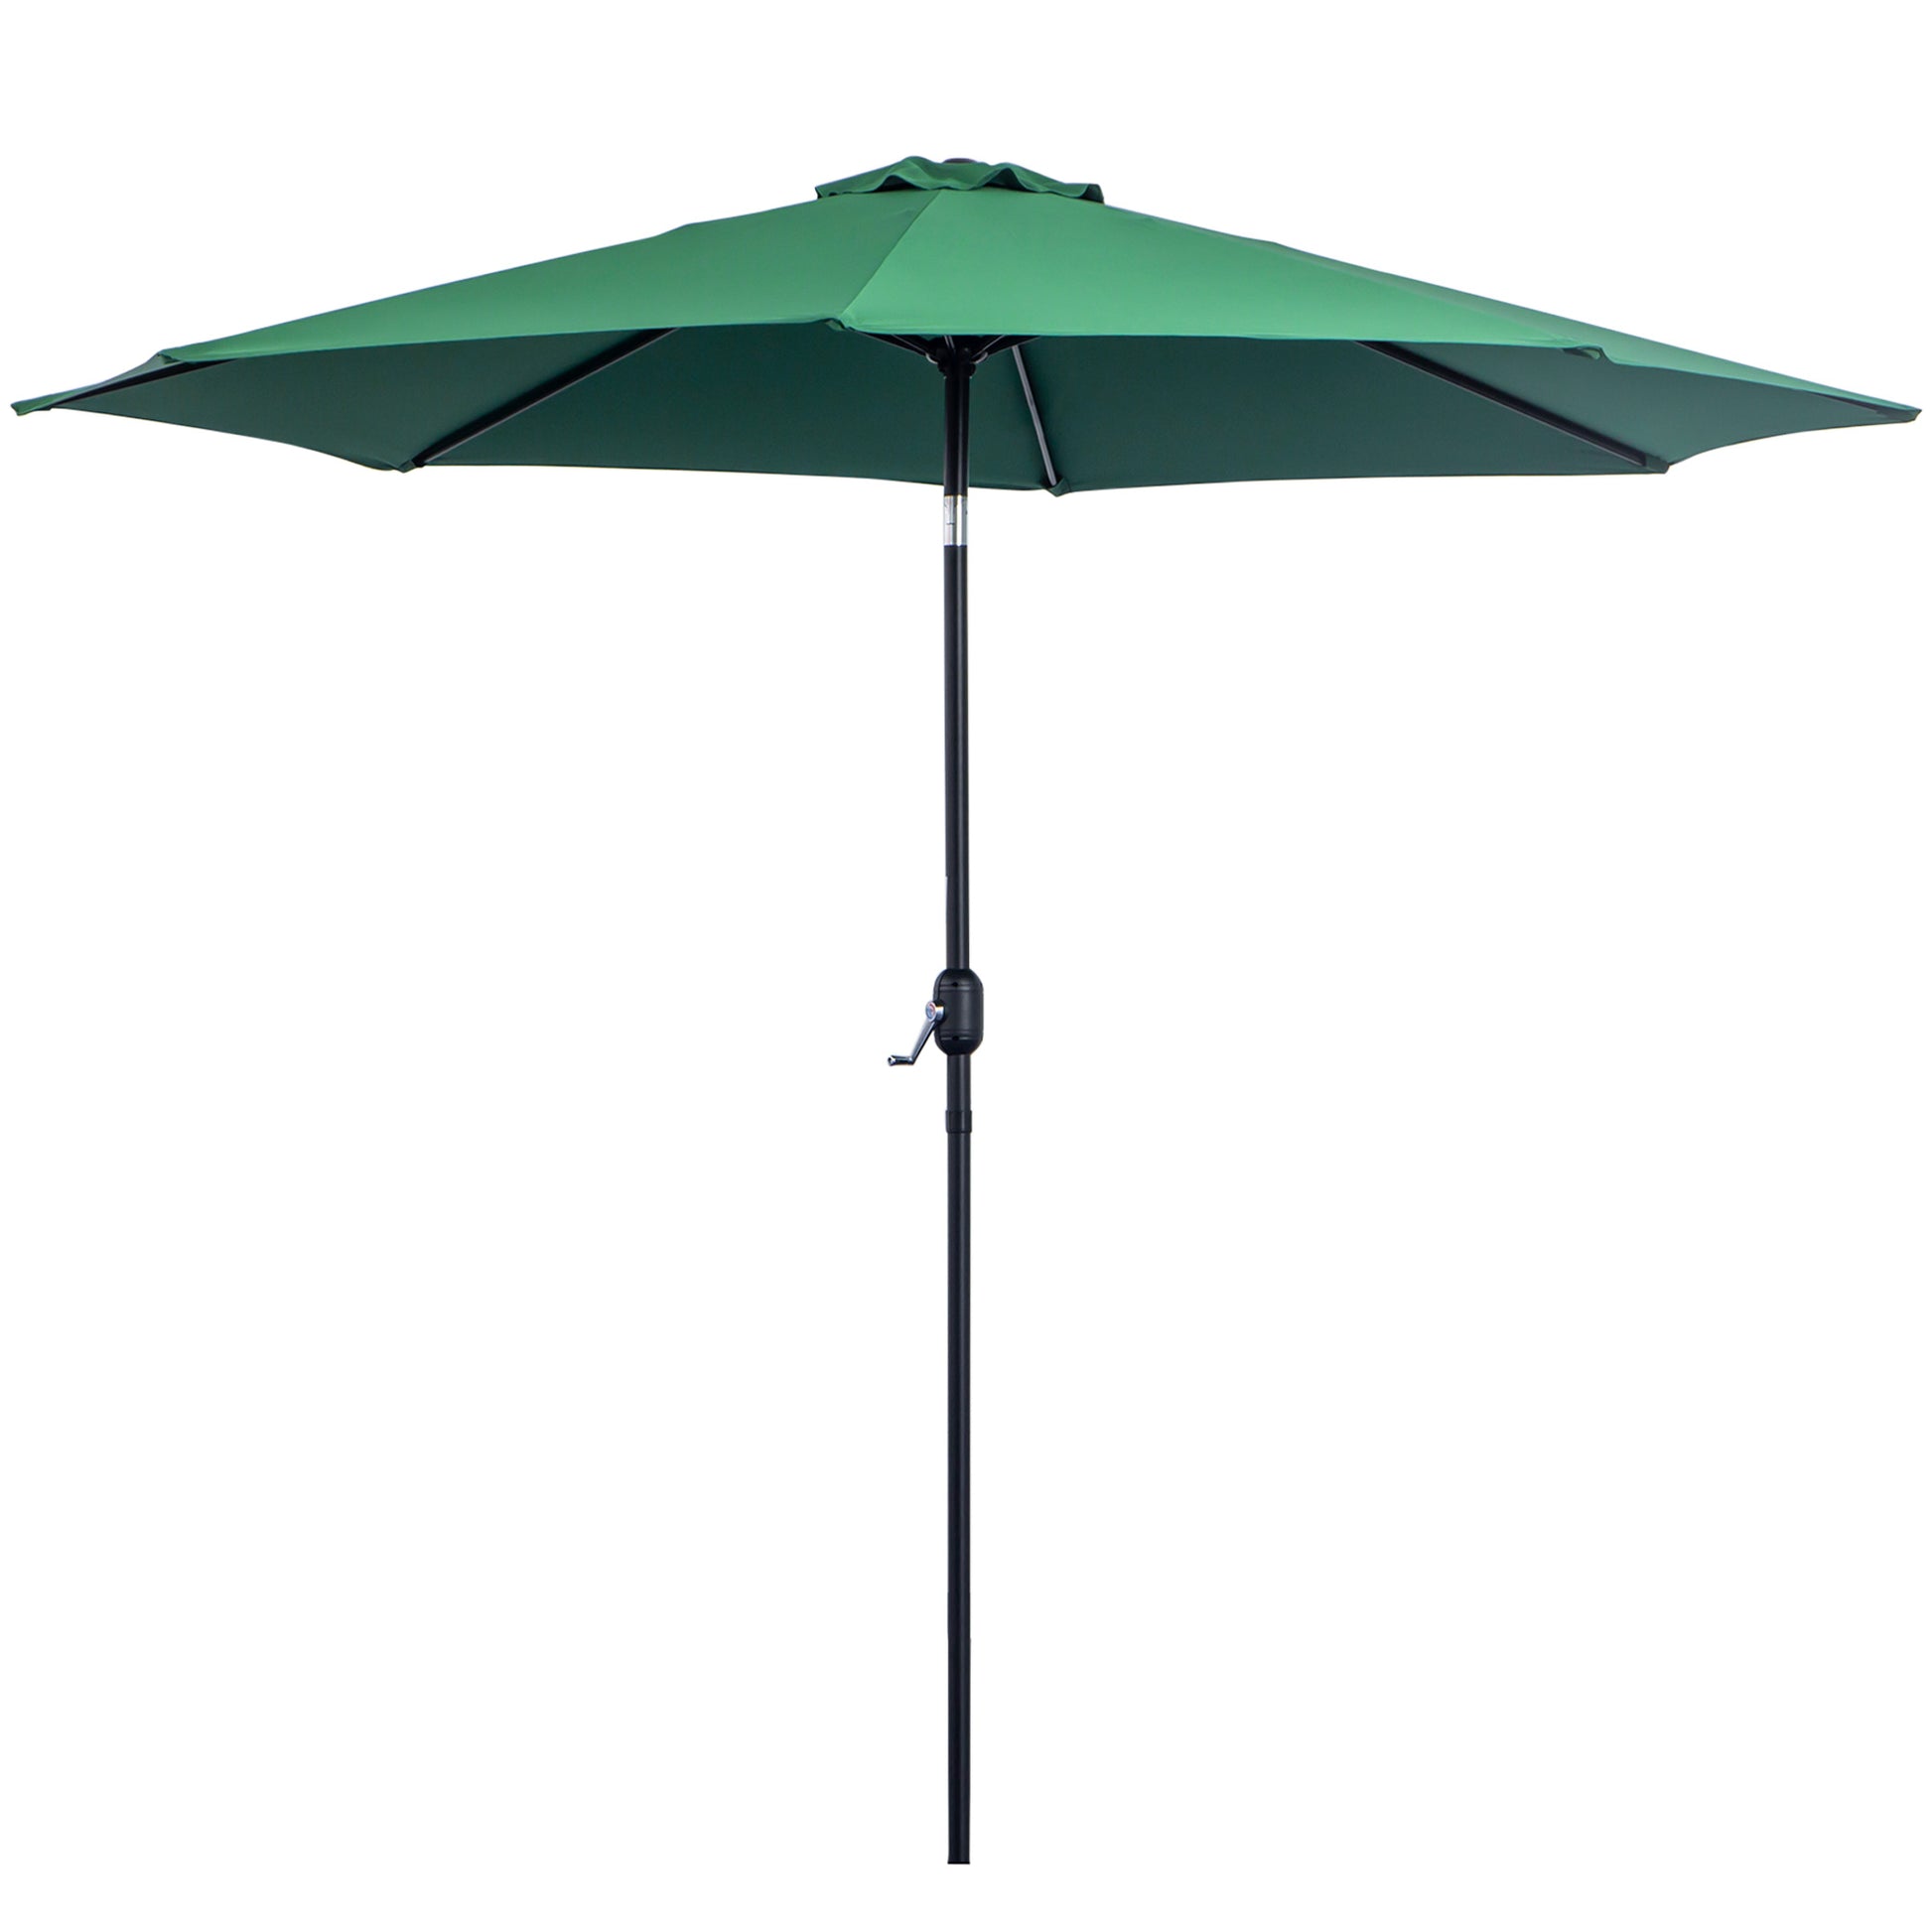 Outsunny 3(m) Tilting Parasol Garden Umbrellas, Outdoor Sun Shade with 8 Ribs, Tilt and Crank Handle for Balcony, Bench, Garden, Green - OutdoorBox